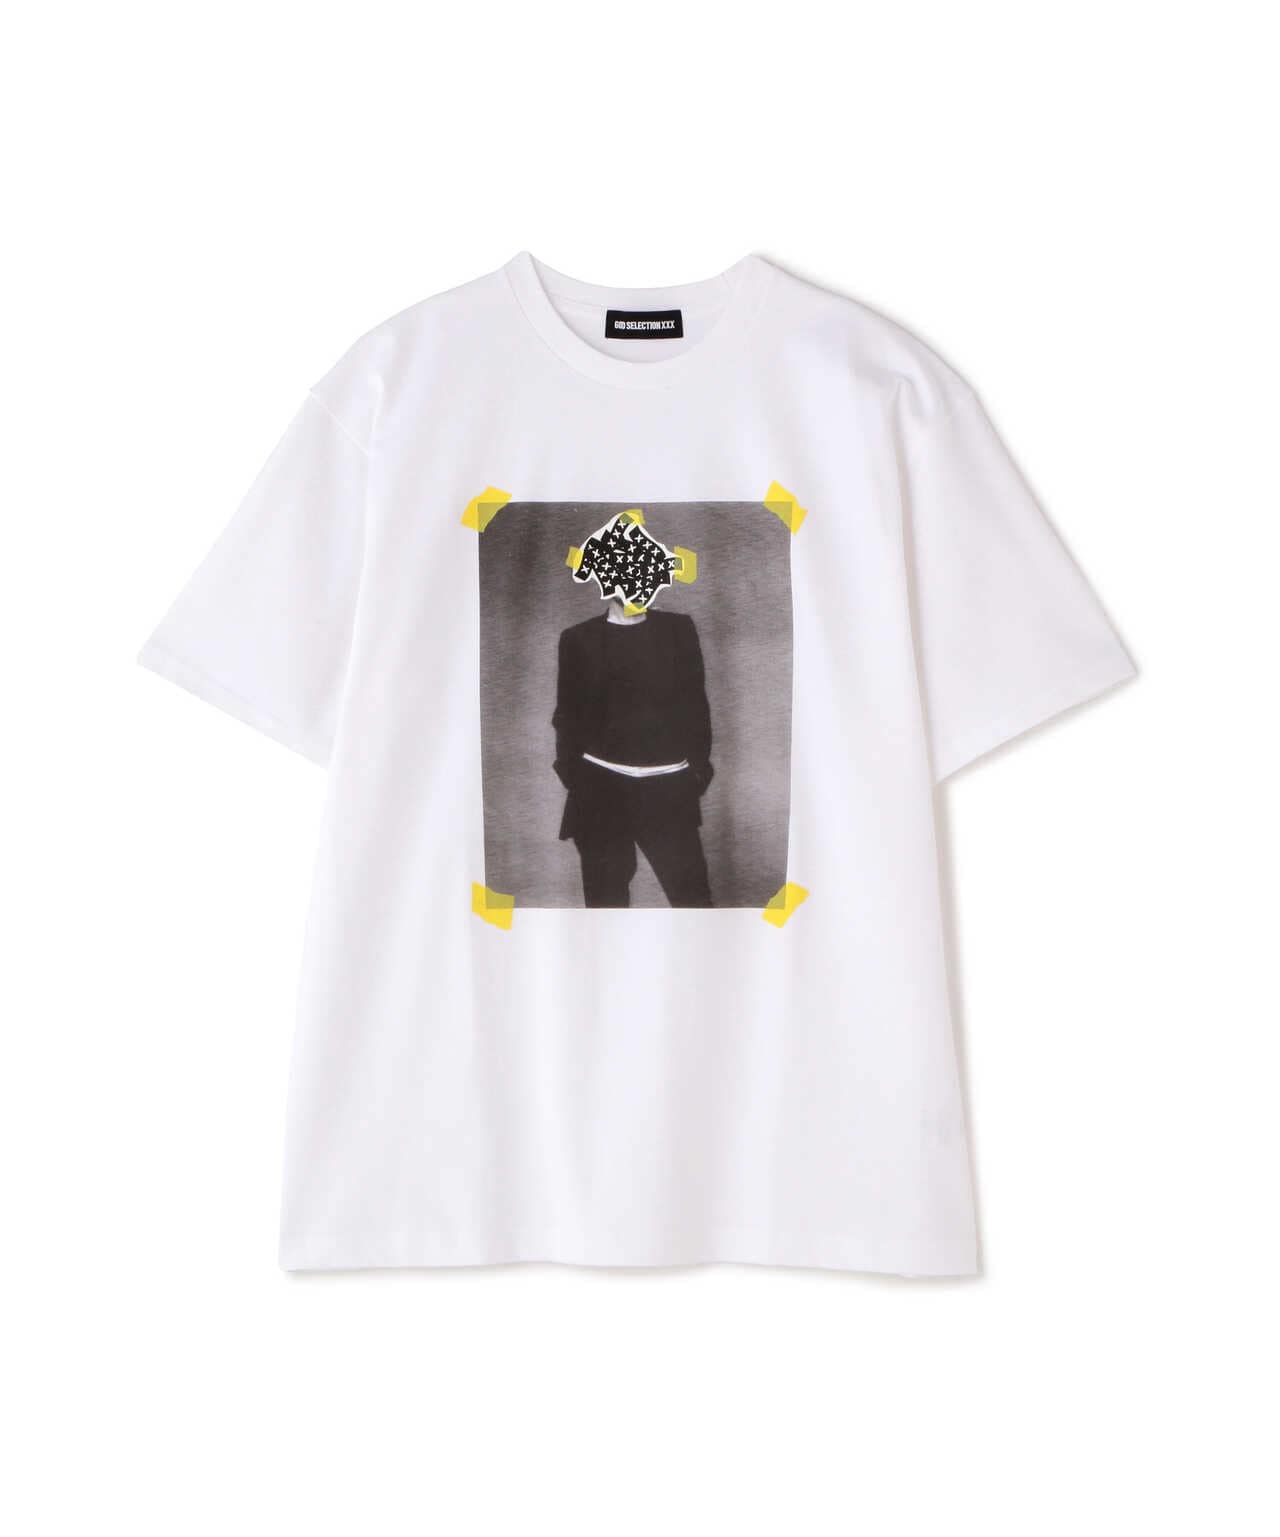 新品 GOD SELECTION XXX T-SHIRT/BLACK Tシャツ